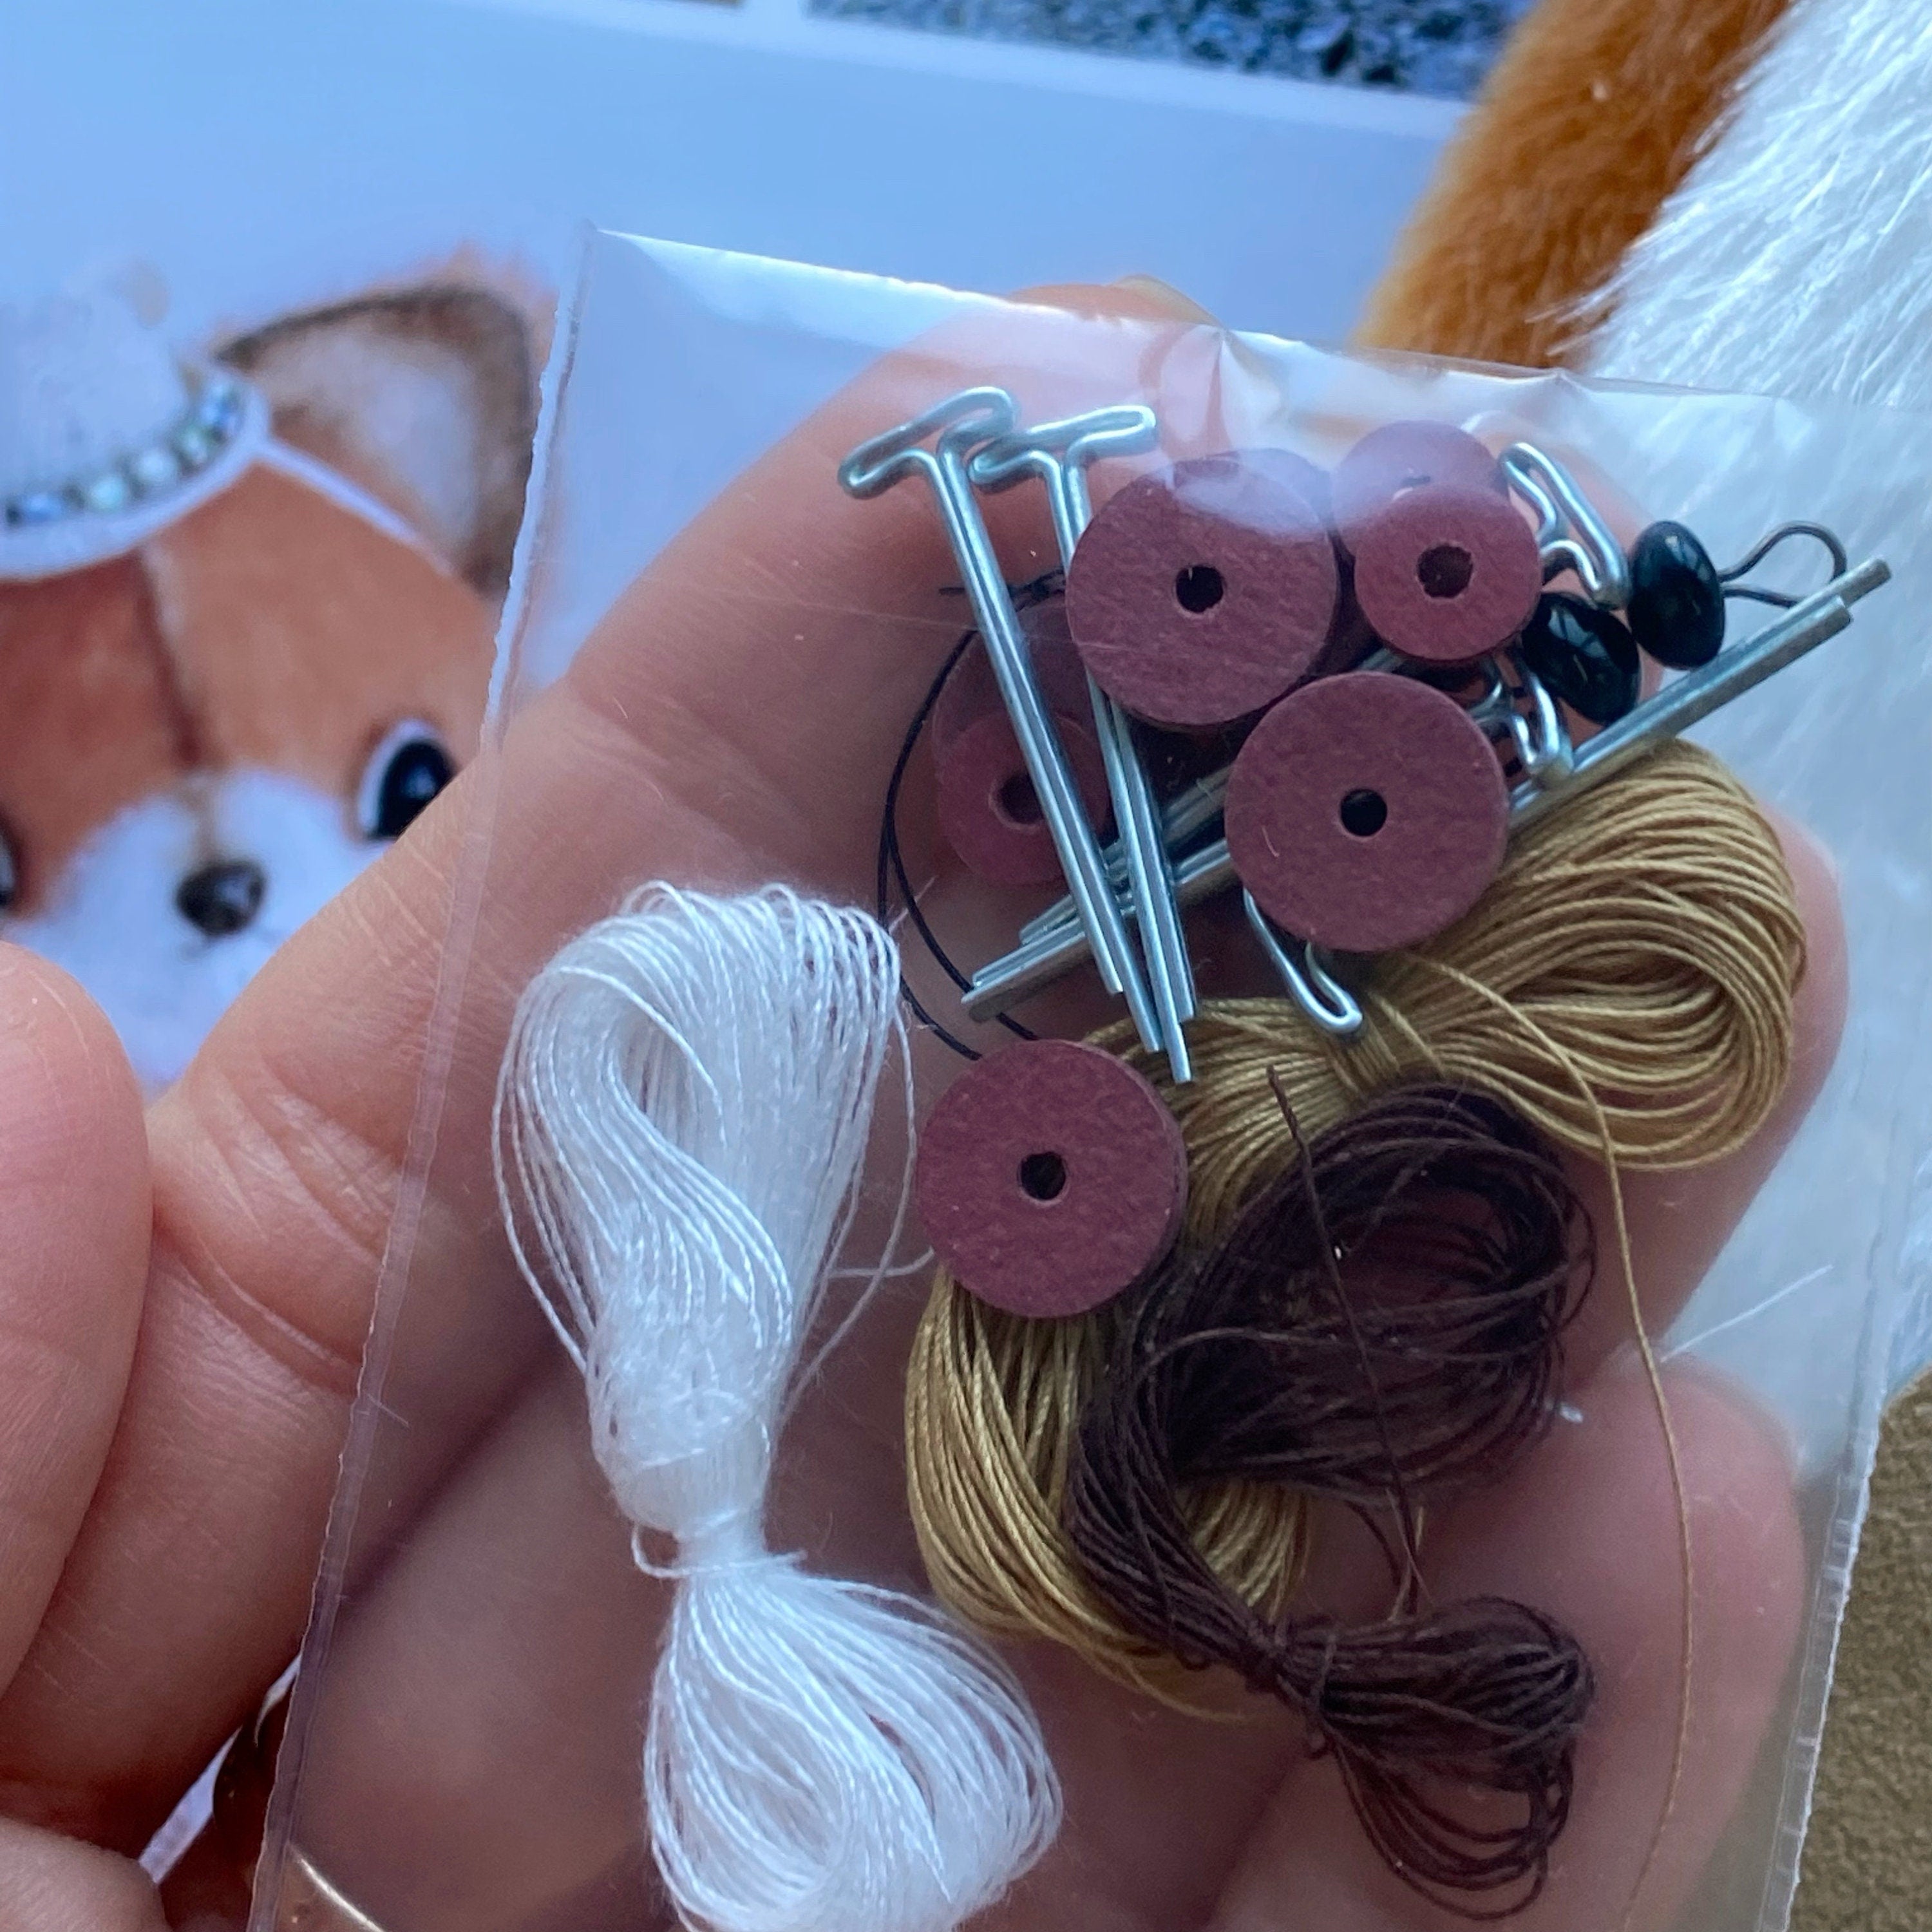 Zorro - DIY KIT toy Mini fox sewing KIT, step-by-step tutorials, mini toy pattern, stuffed animals pattern, soft toy sewing kit pattern